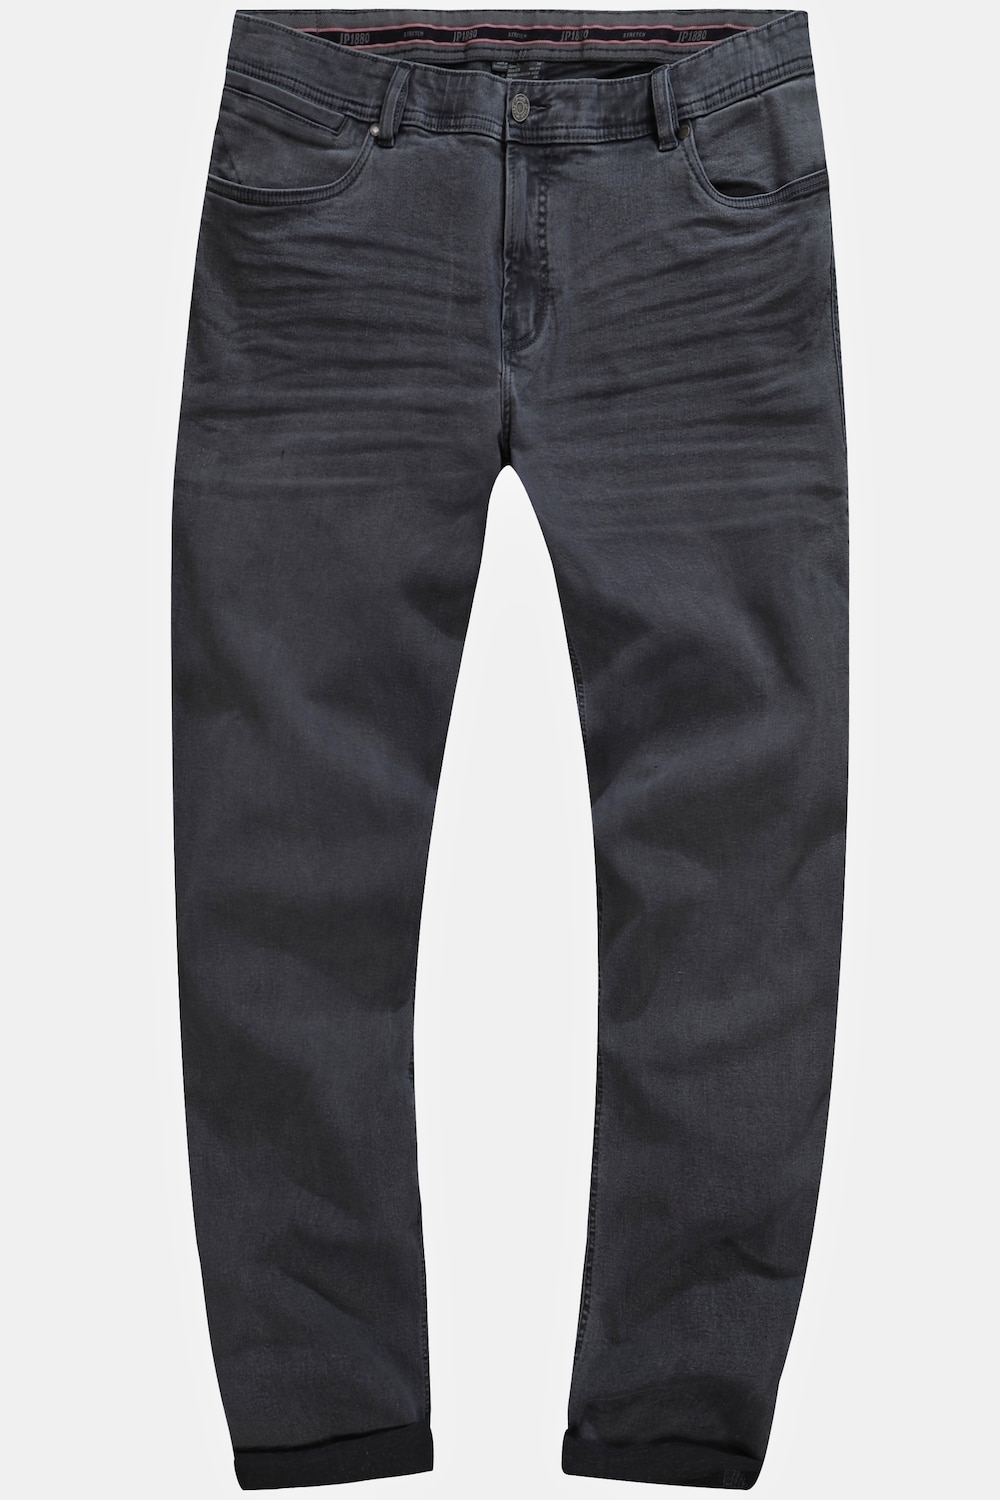 Grote Maten Jeans, Heren, grijs, Maat: 28, Katoen, JP1880